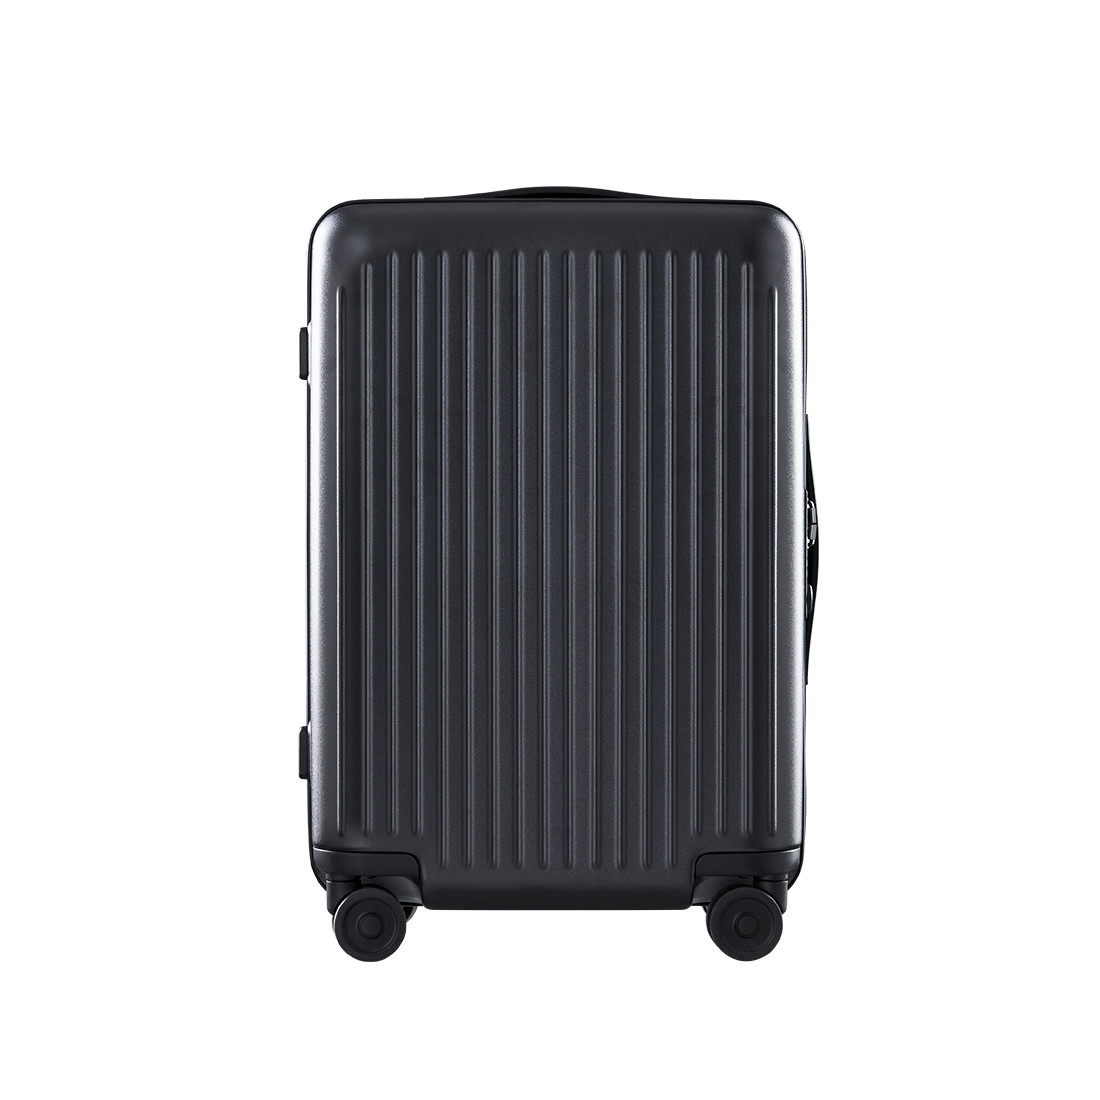 Чемодан Urevo Seina Luggage -24‘’ Черный